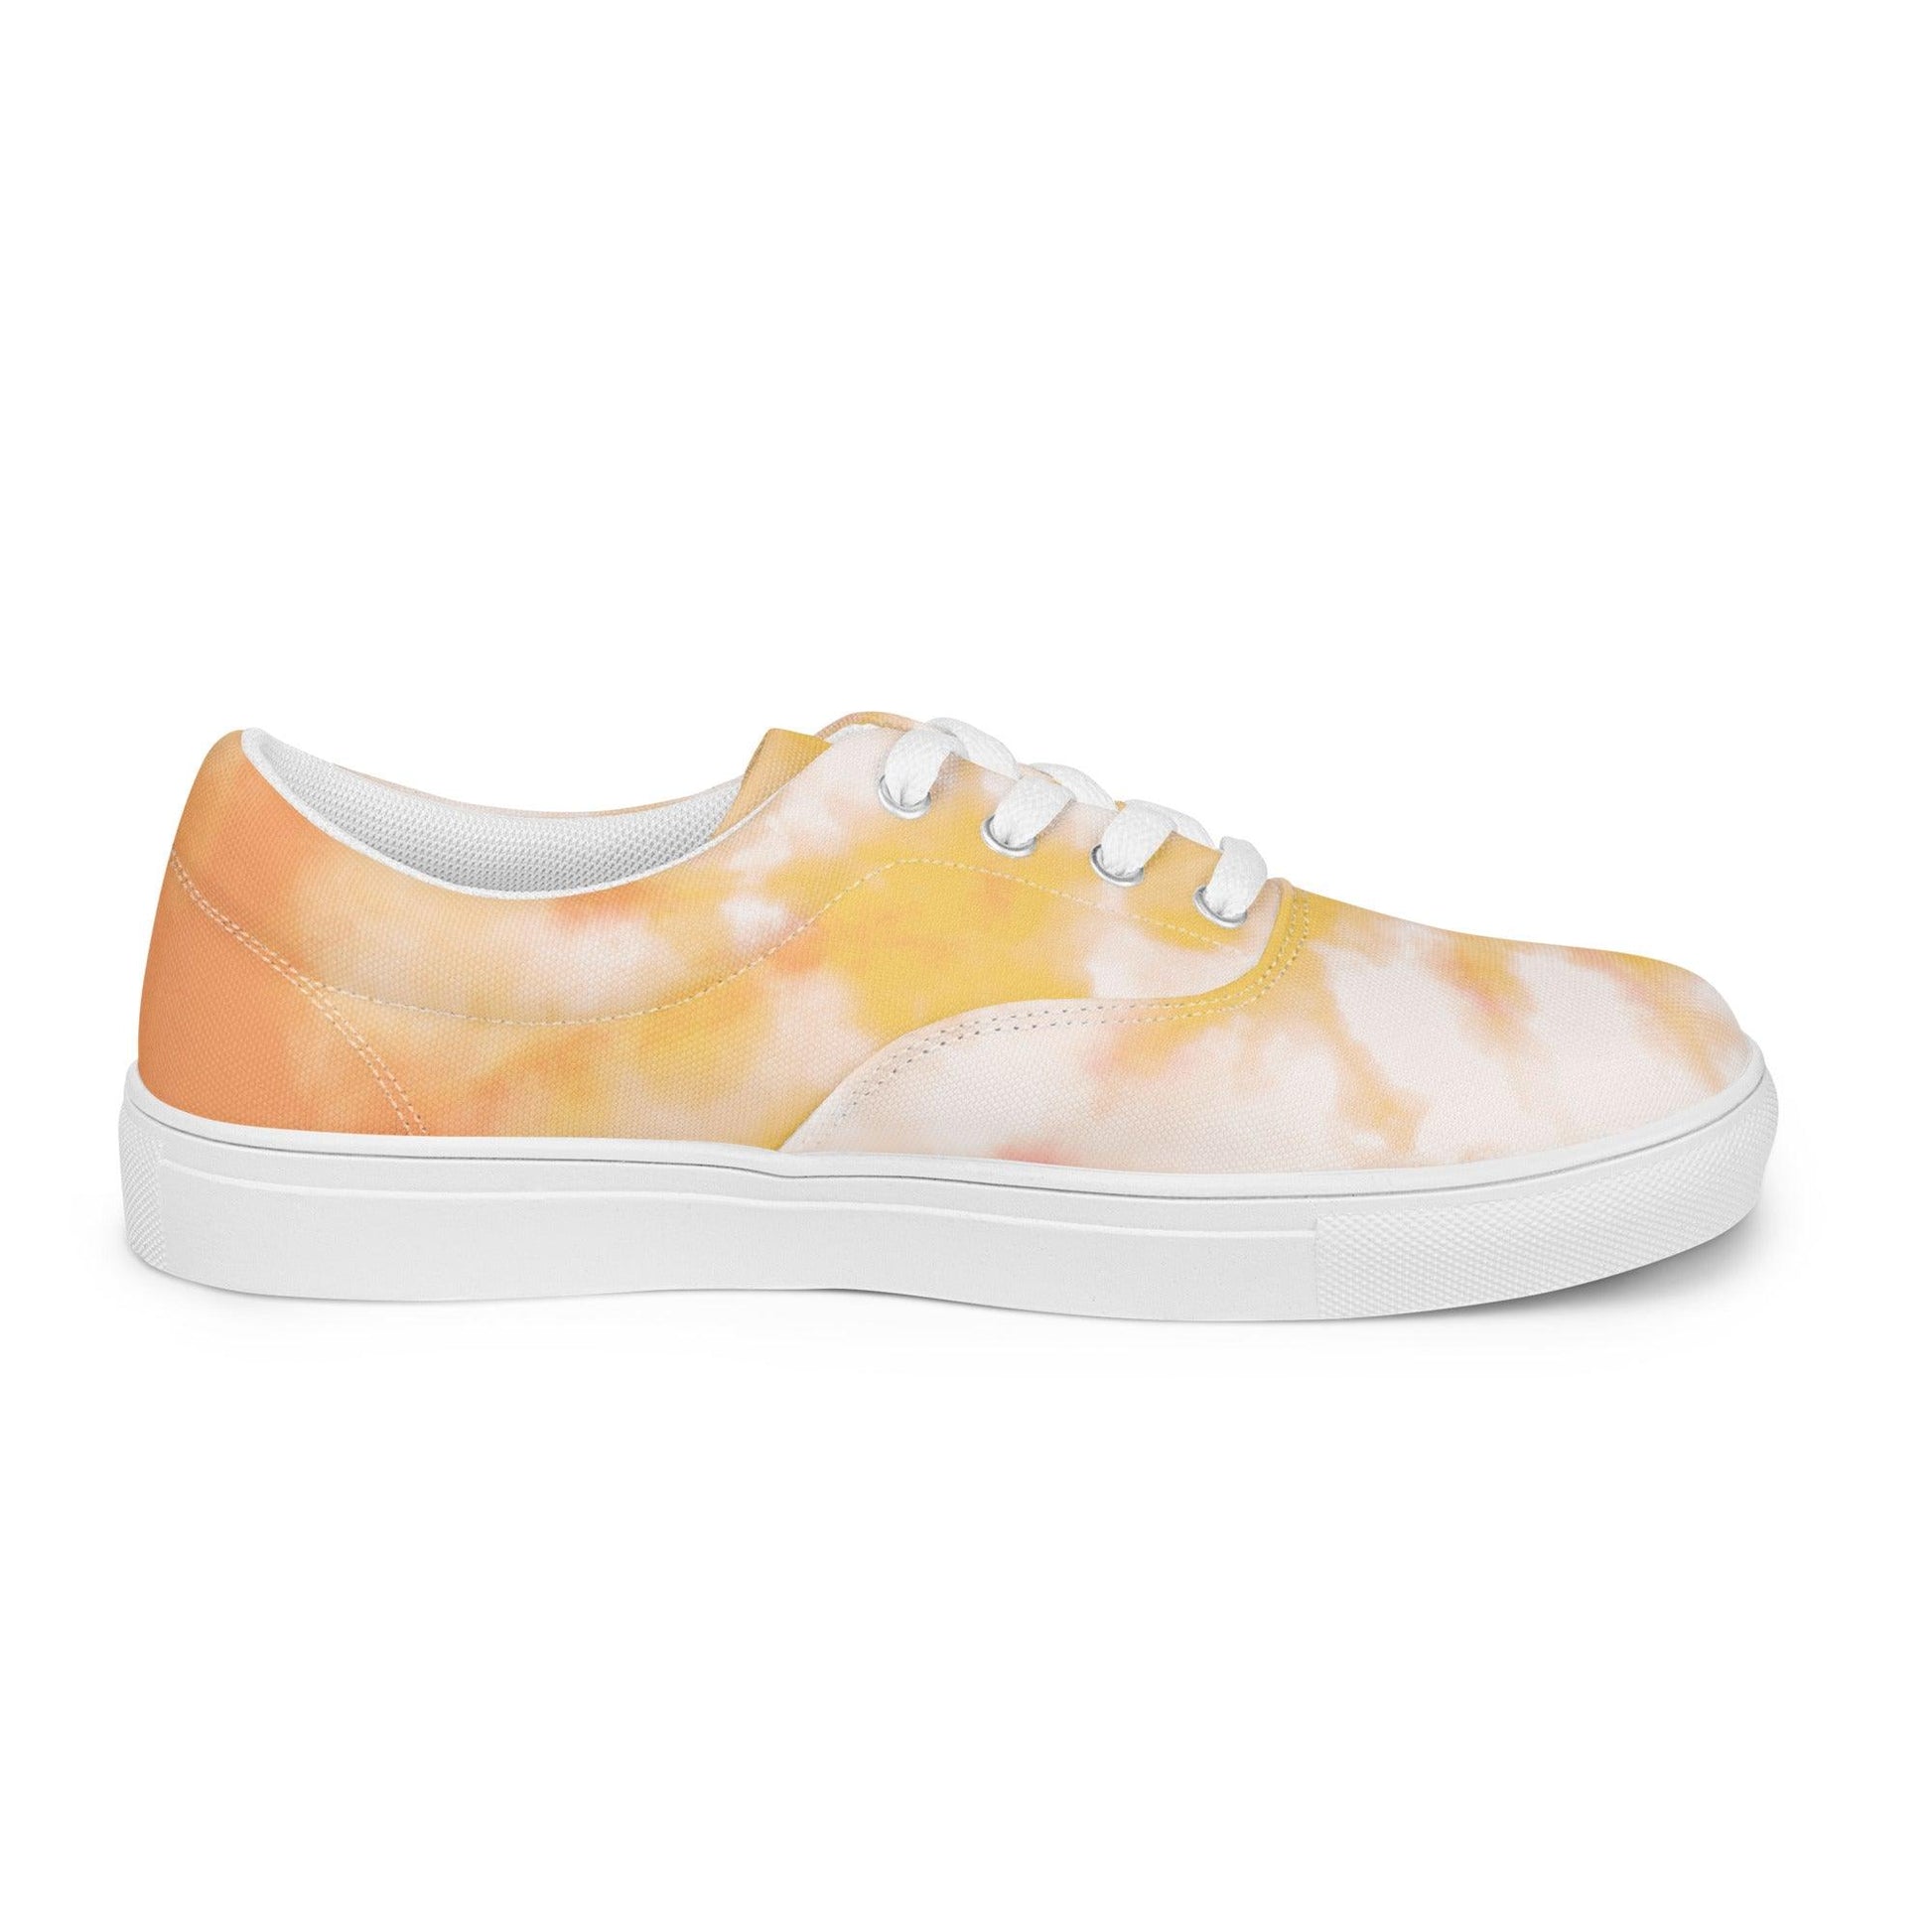 Peach Tie Dye Women’s Lace-up Canvas Shoes - L & M Kee, LLC